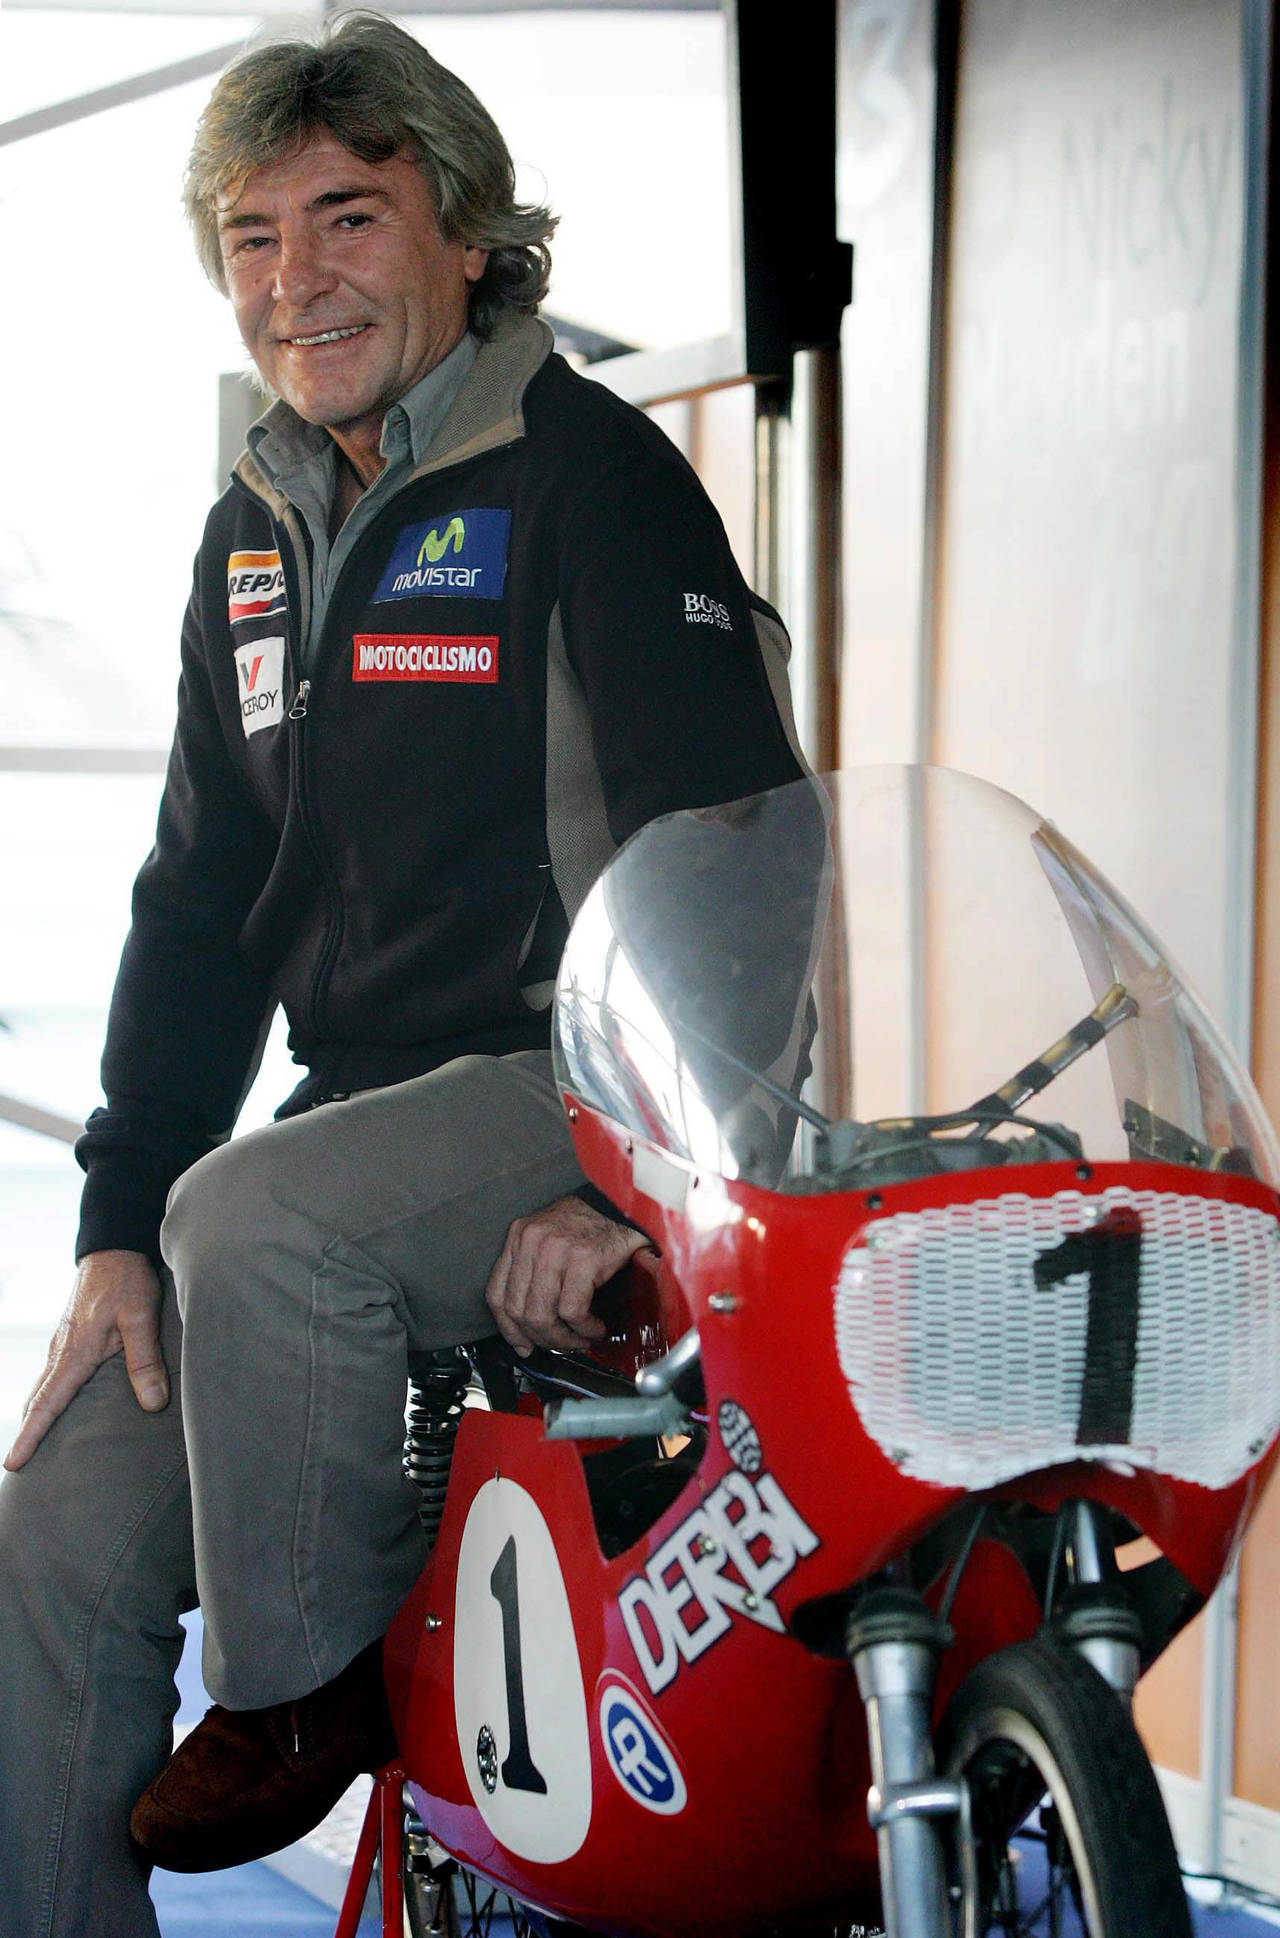 El español Ángel Nieto fue 13 veces campeón del mundo. Muere el legendario motociclista Ángel Nieto tras grave accidente